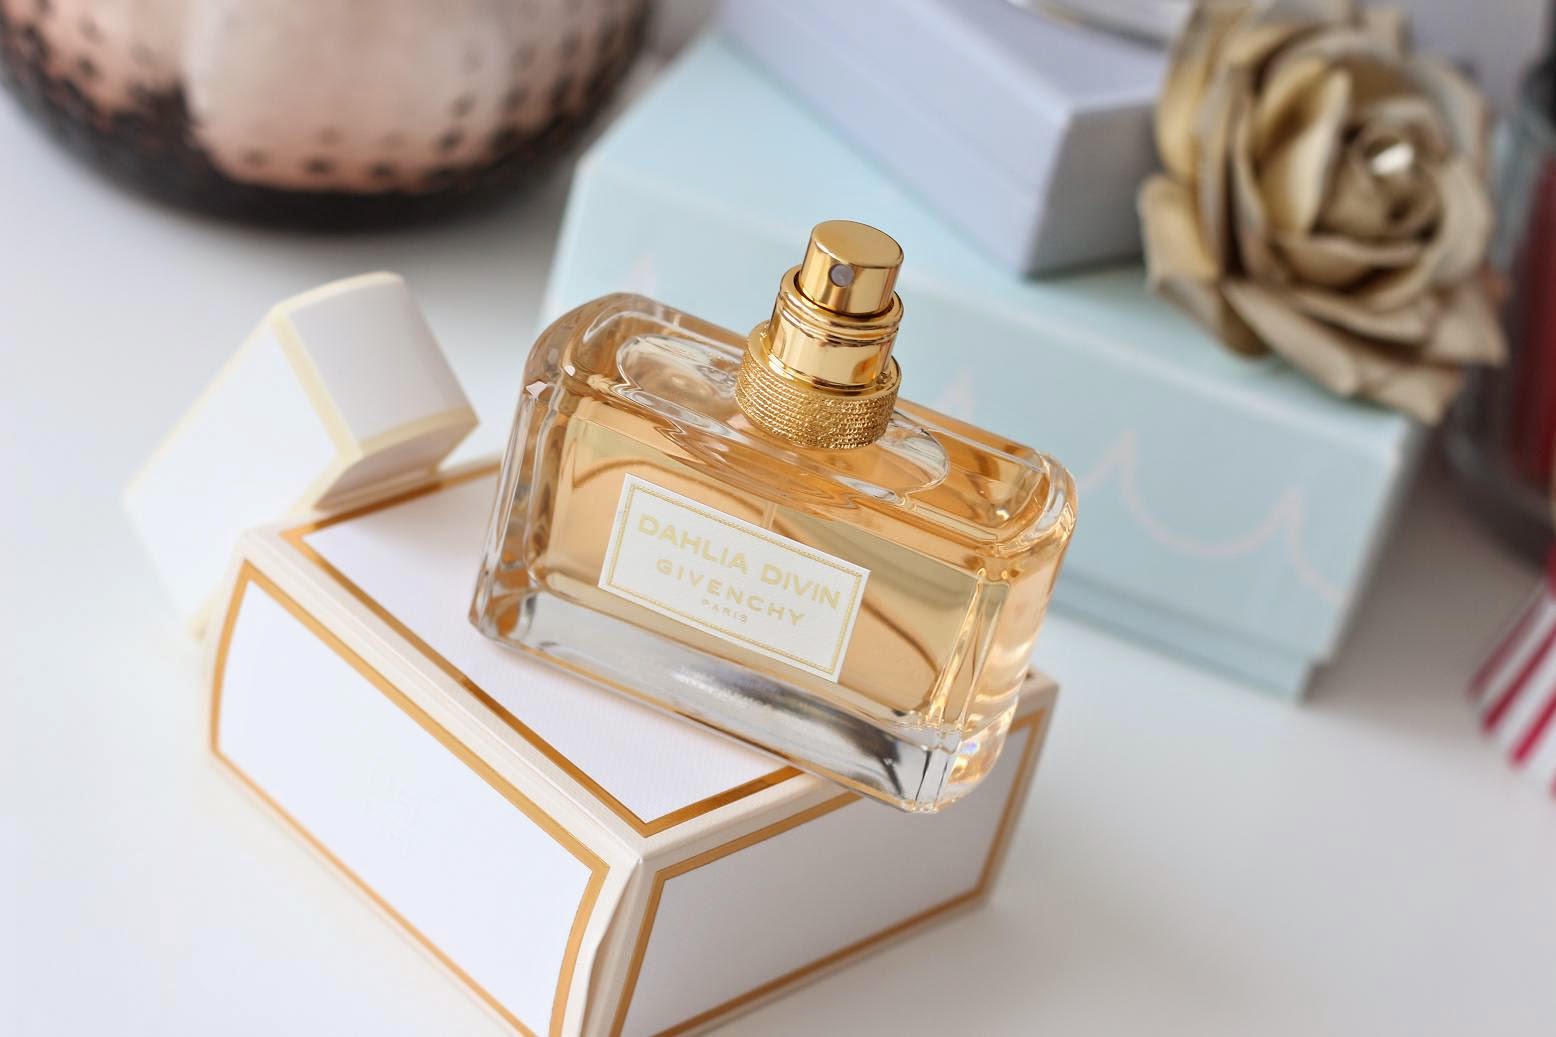 Givenchy Dahlia Divin eau de parfum